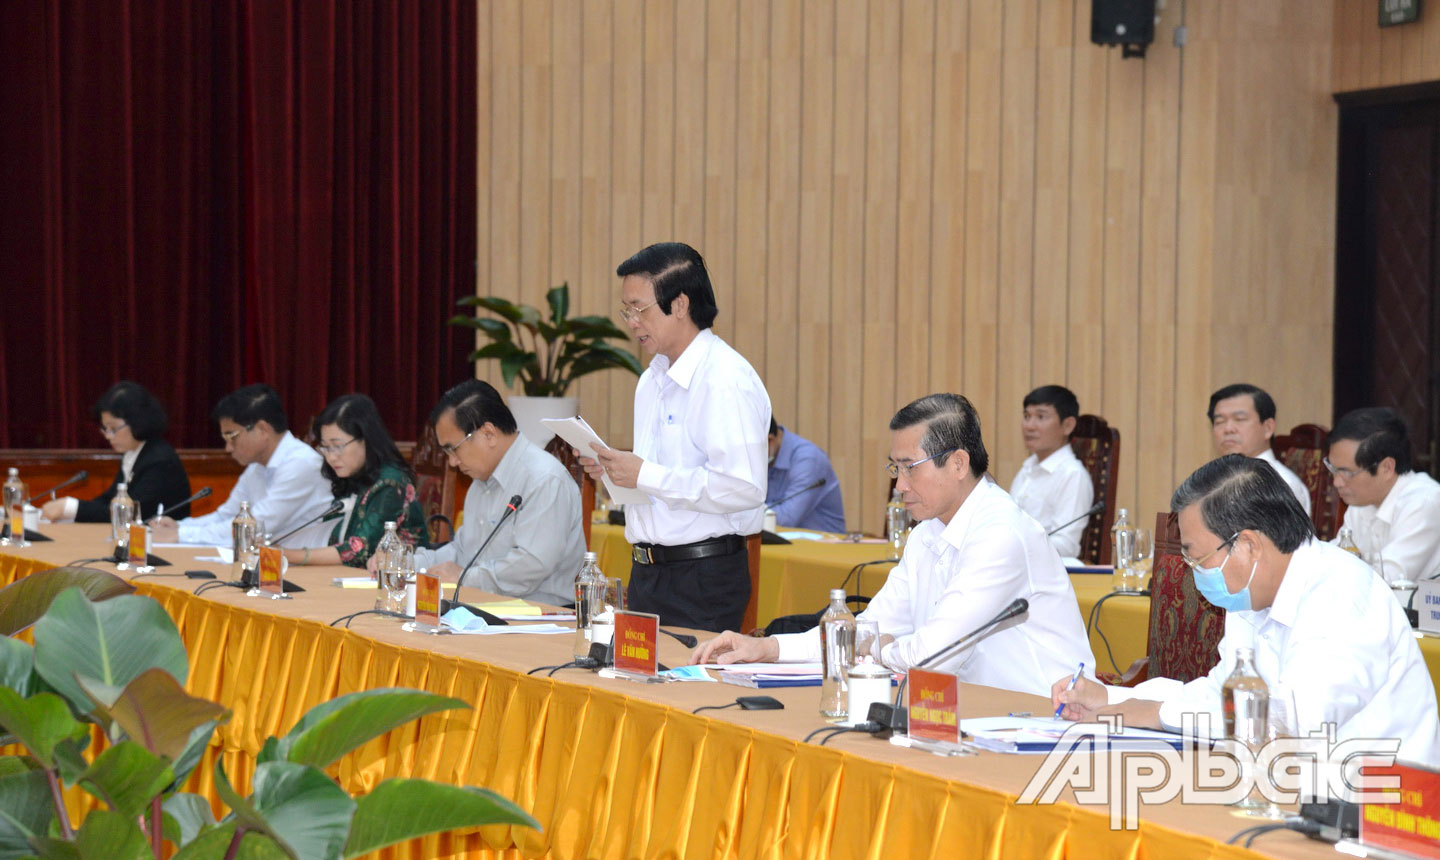 Các đồng chí Thường trực Tỉnh ủy Tiền Giang tham dự hội nghị và tiếp thu ý kiến đóng góp của các đồng chí Ủy viên Bộ Chính trị cùng với lãnh đạo các bộ, ngành Trung ương.